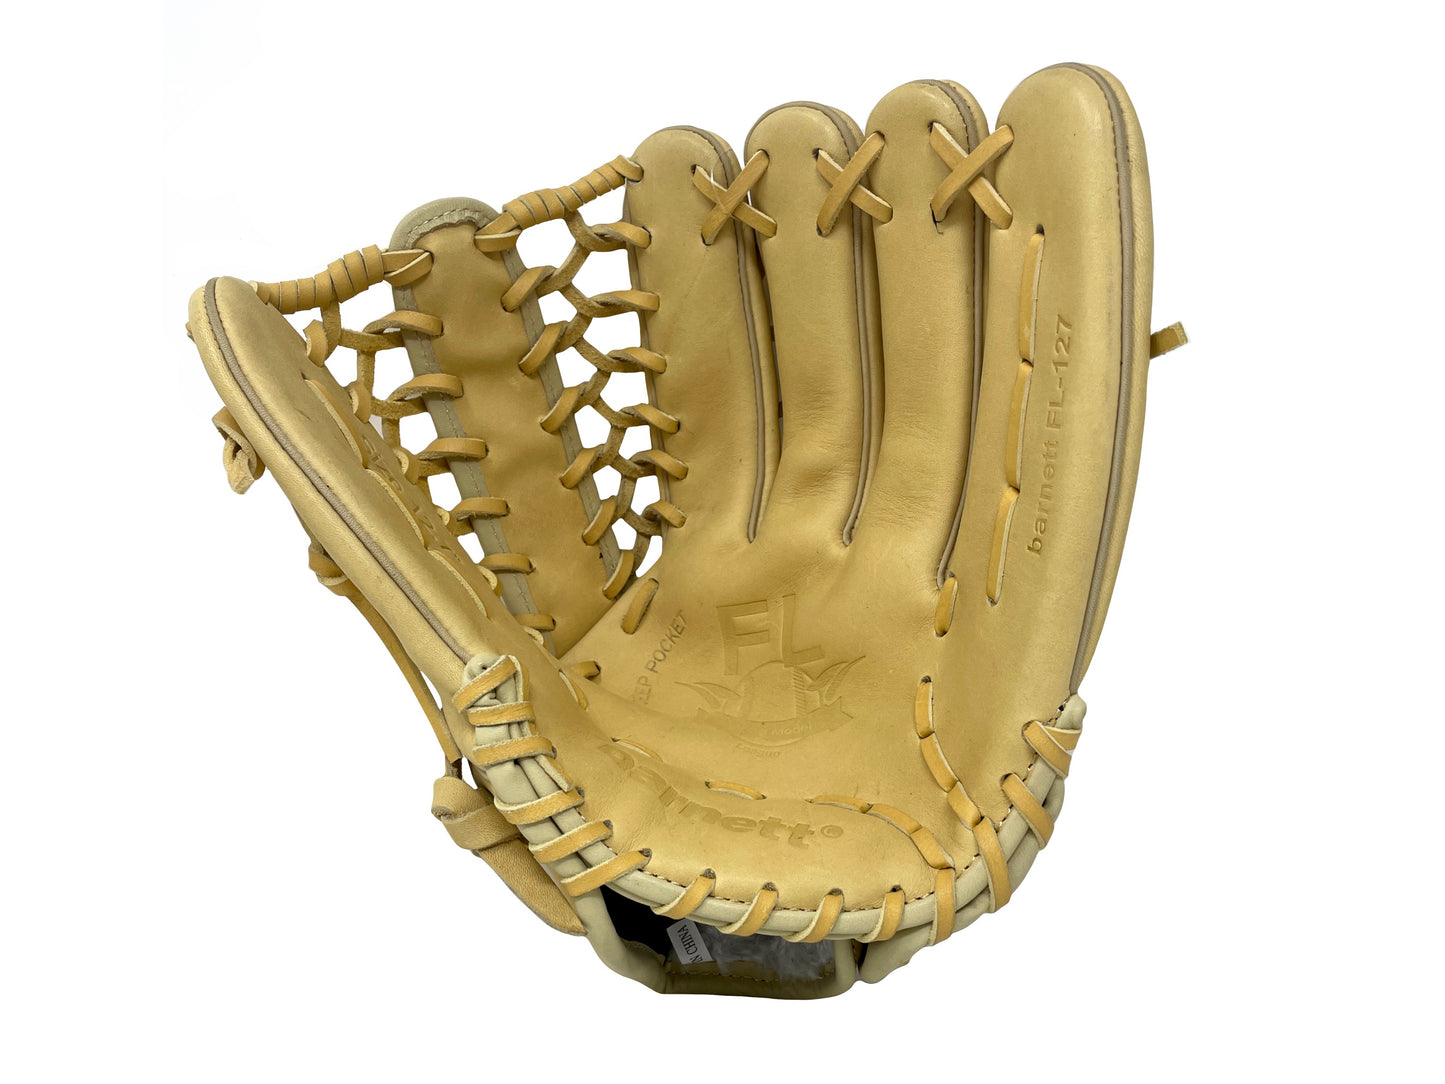 FL-127 gant de baseball cuir haute qualité infield/outfield/pitcher, 12.7" beige